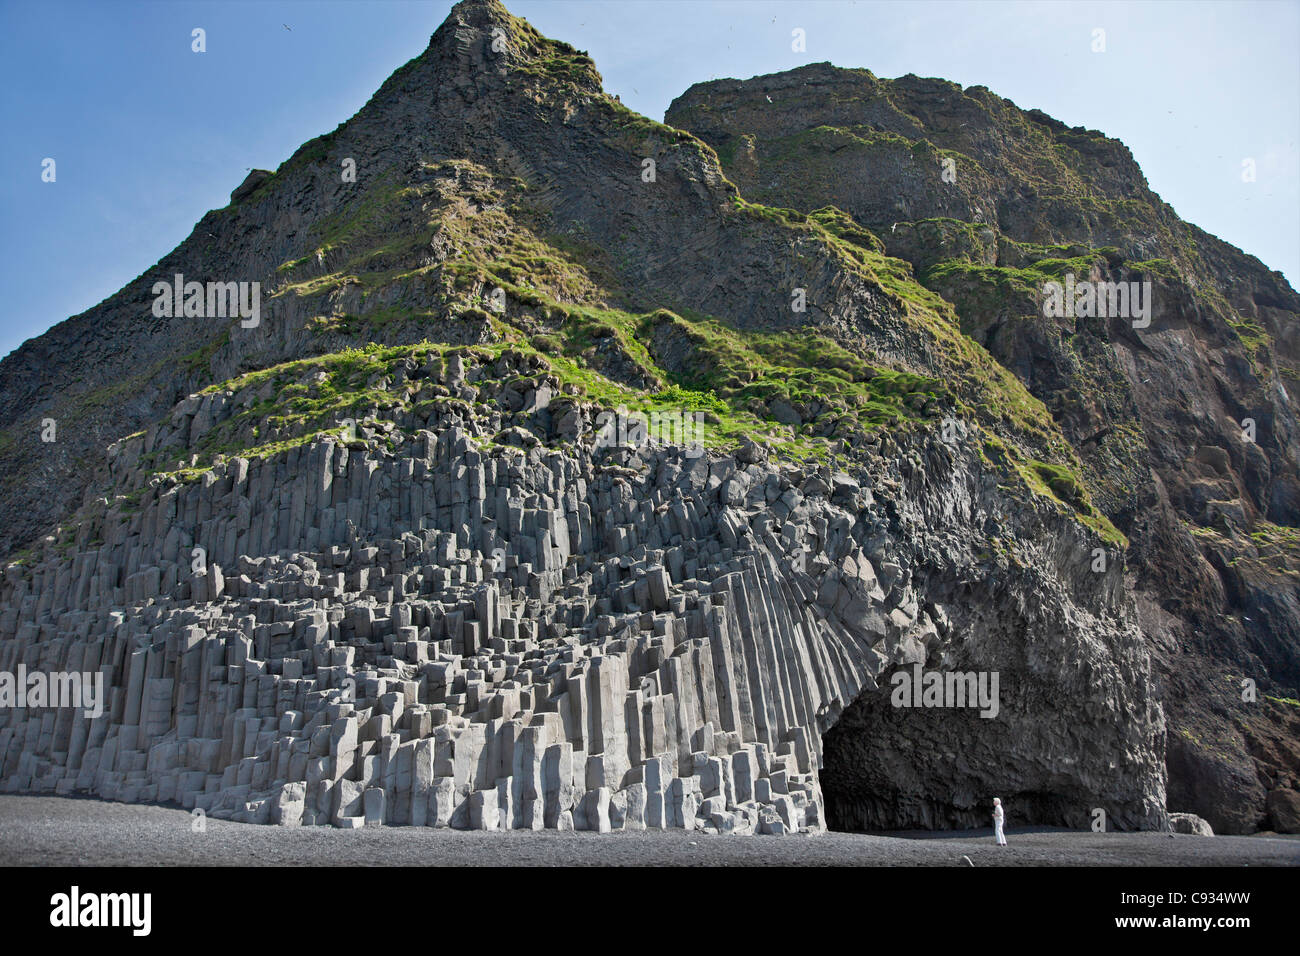 Le enormi colonne di basalto, in piedi come il gigantesco organo a canne e Grotta Garoar dwarf un visitatore di Reynisfjara, a ovest di Vik. Foto Stock